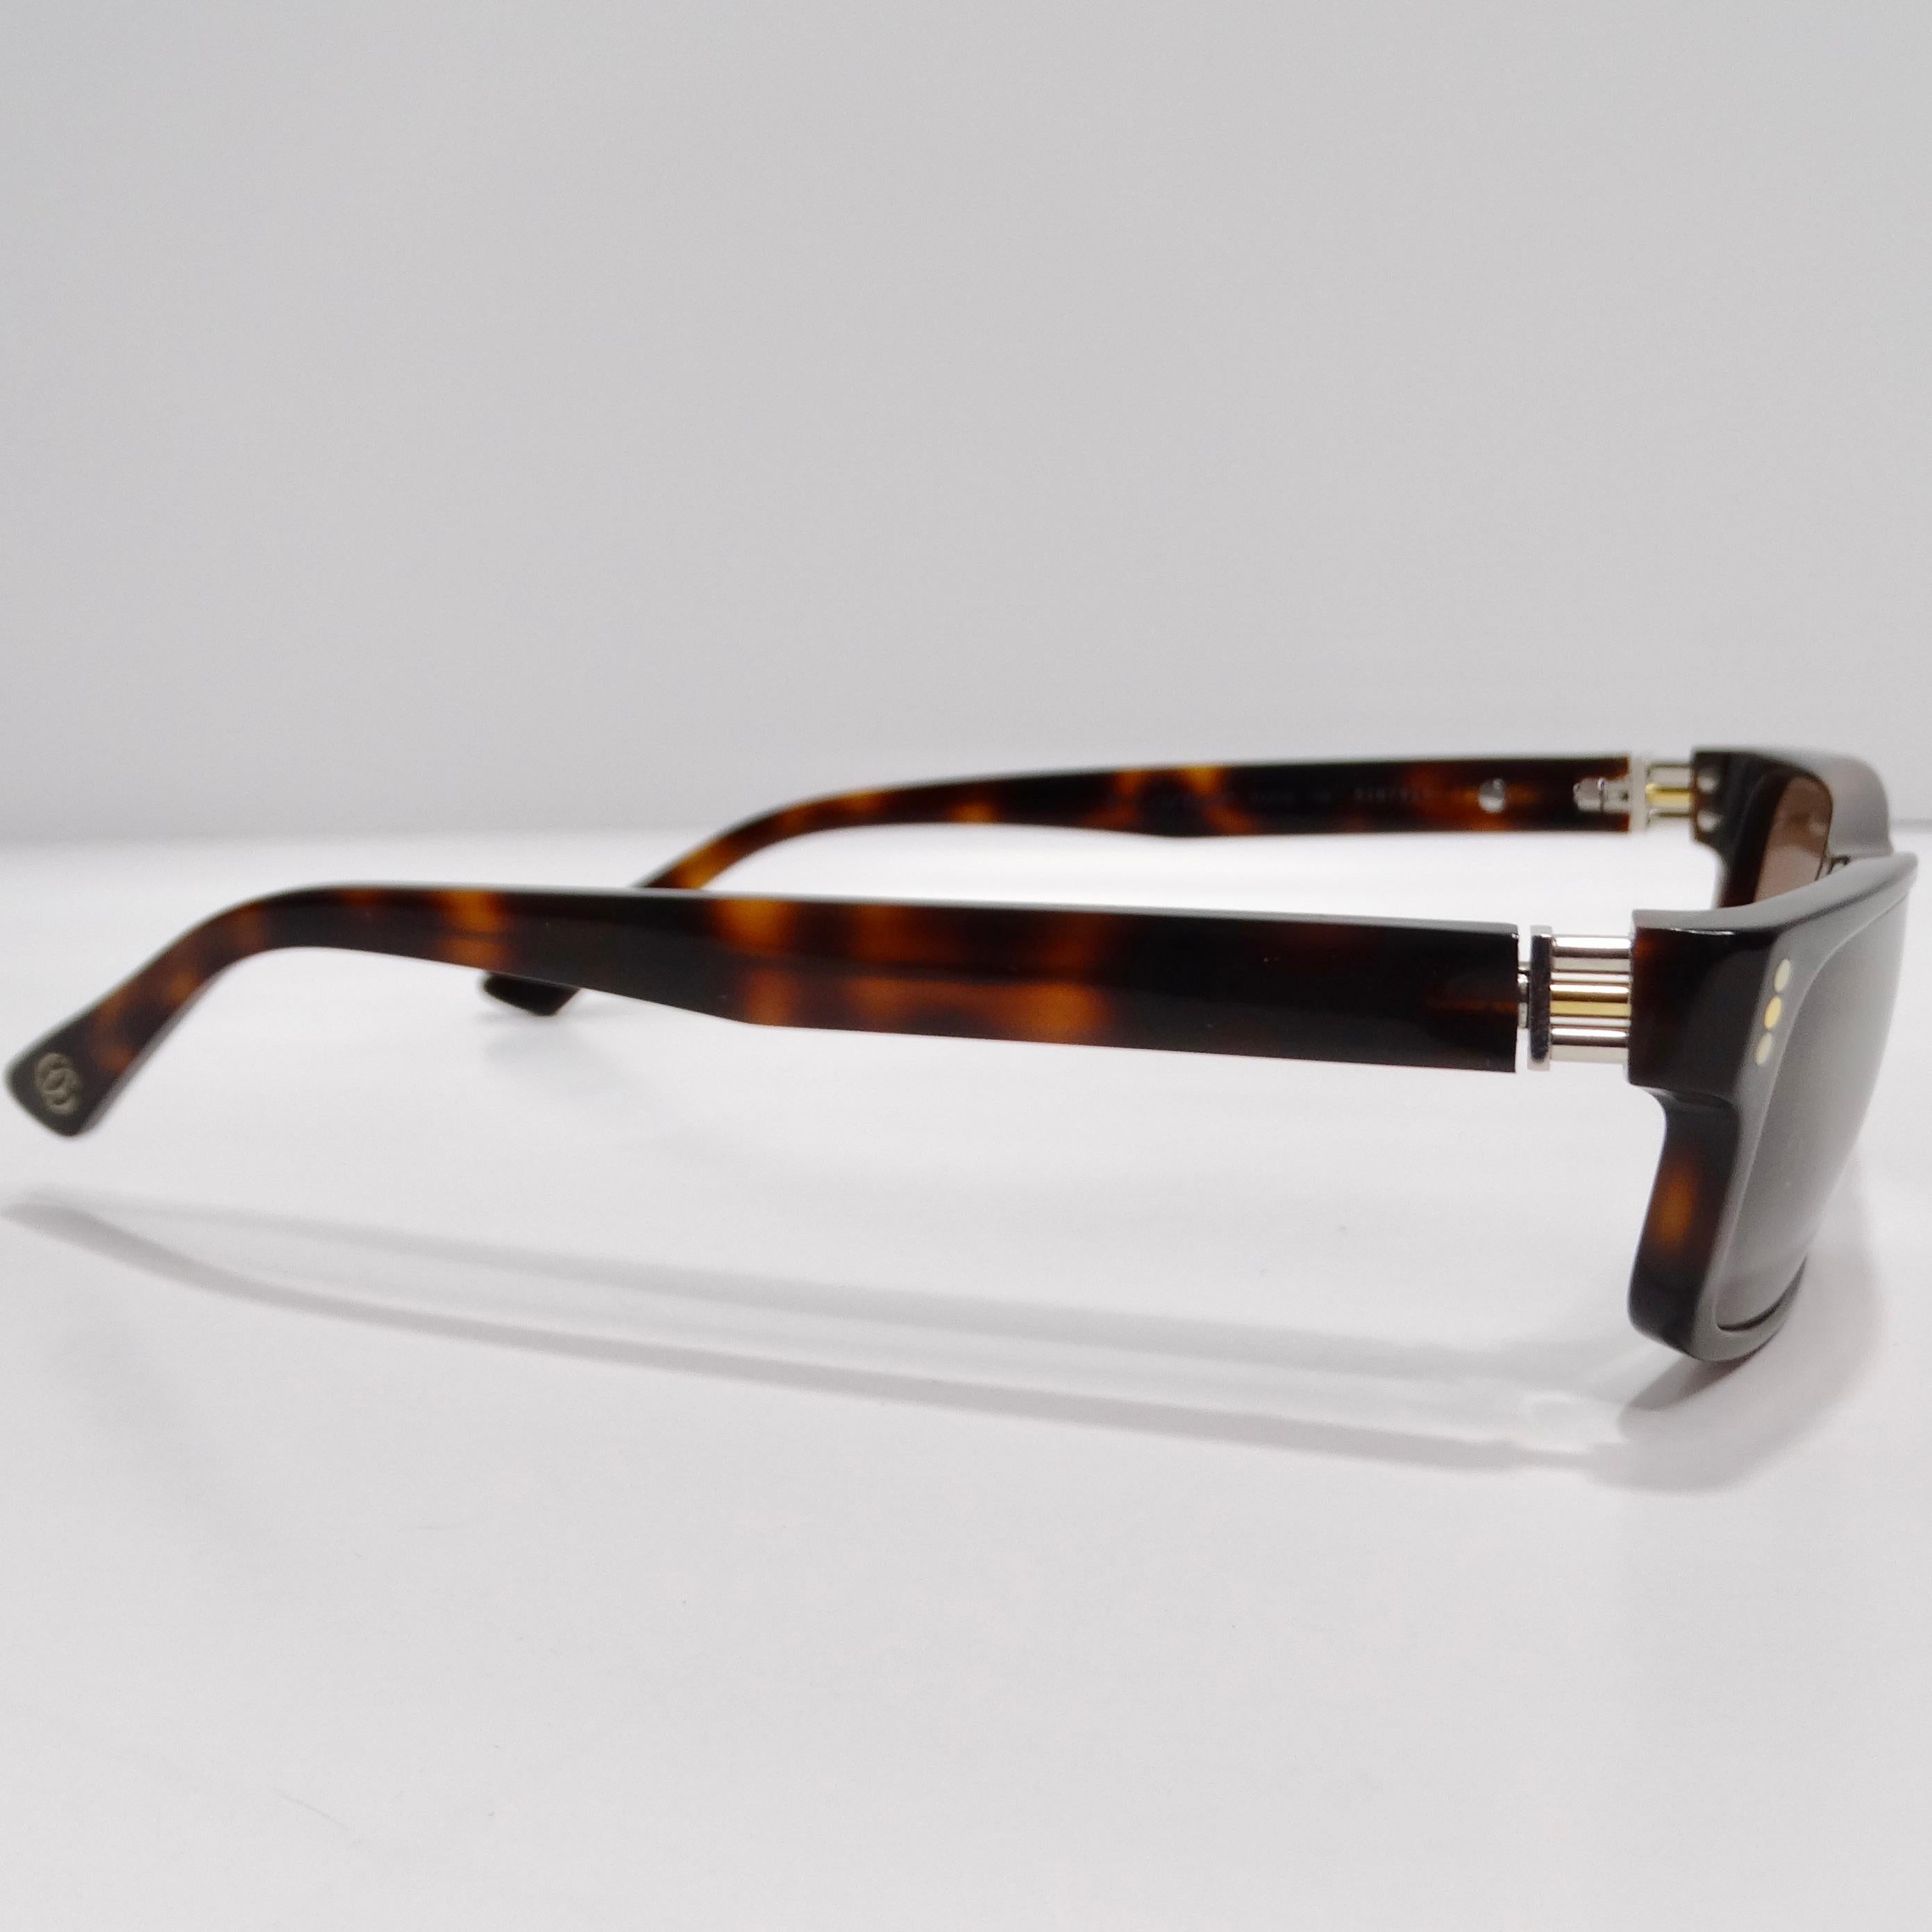 Gönnen Sie sich zeitlose Eleganz mit dieser Cartier 1990er Sonnenbrille mit quadratischem Rahmen aus Schildpatt. Diese mit viel Liebe zum Detail gefertigte Sonnenbrille strahlt Raffinesse und Stil aus.

Das klassische quadratische Rahmendesign wird